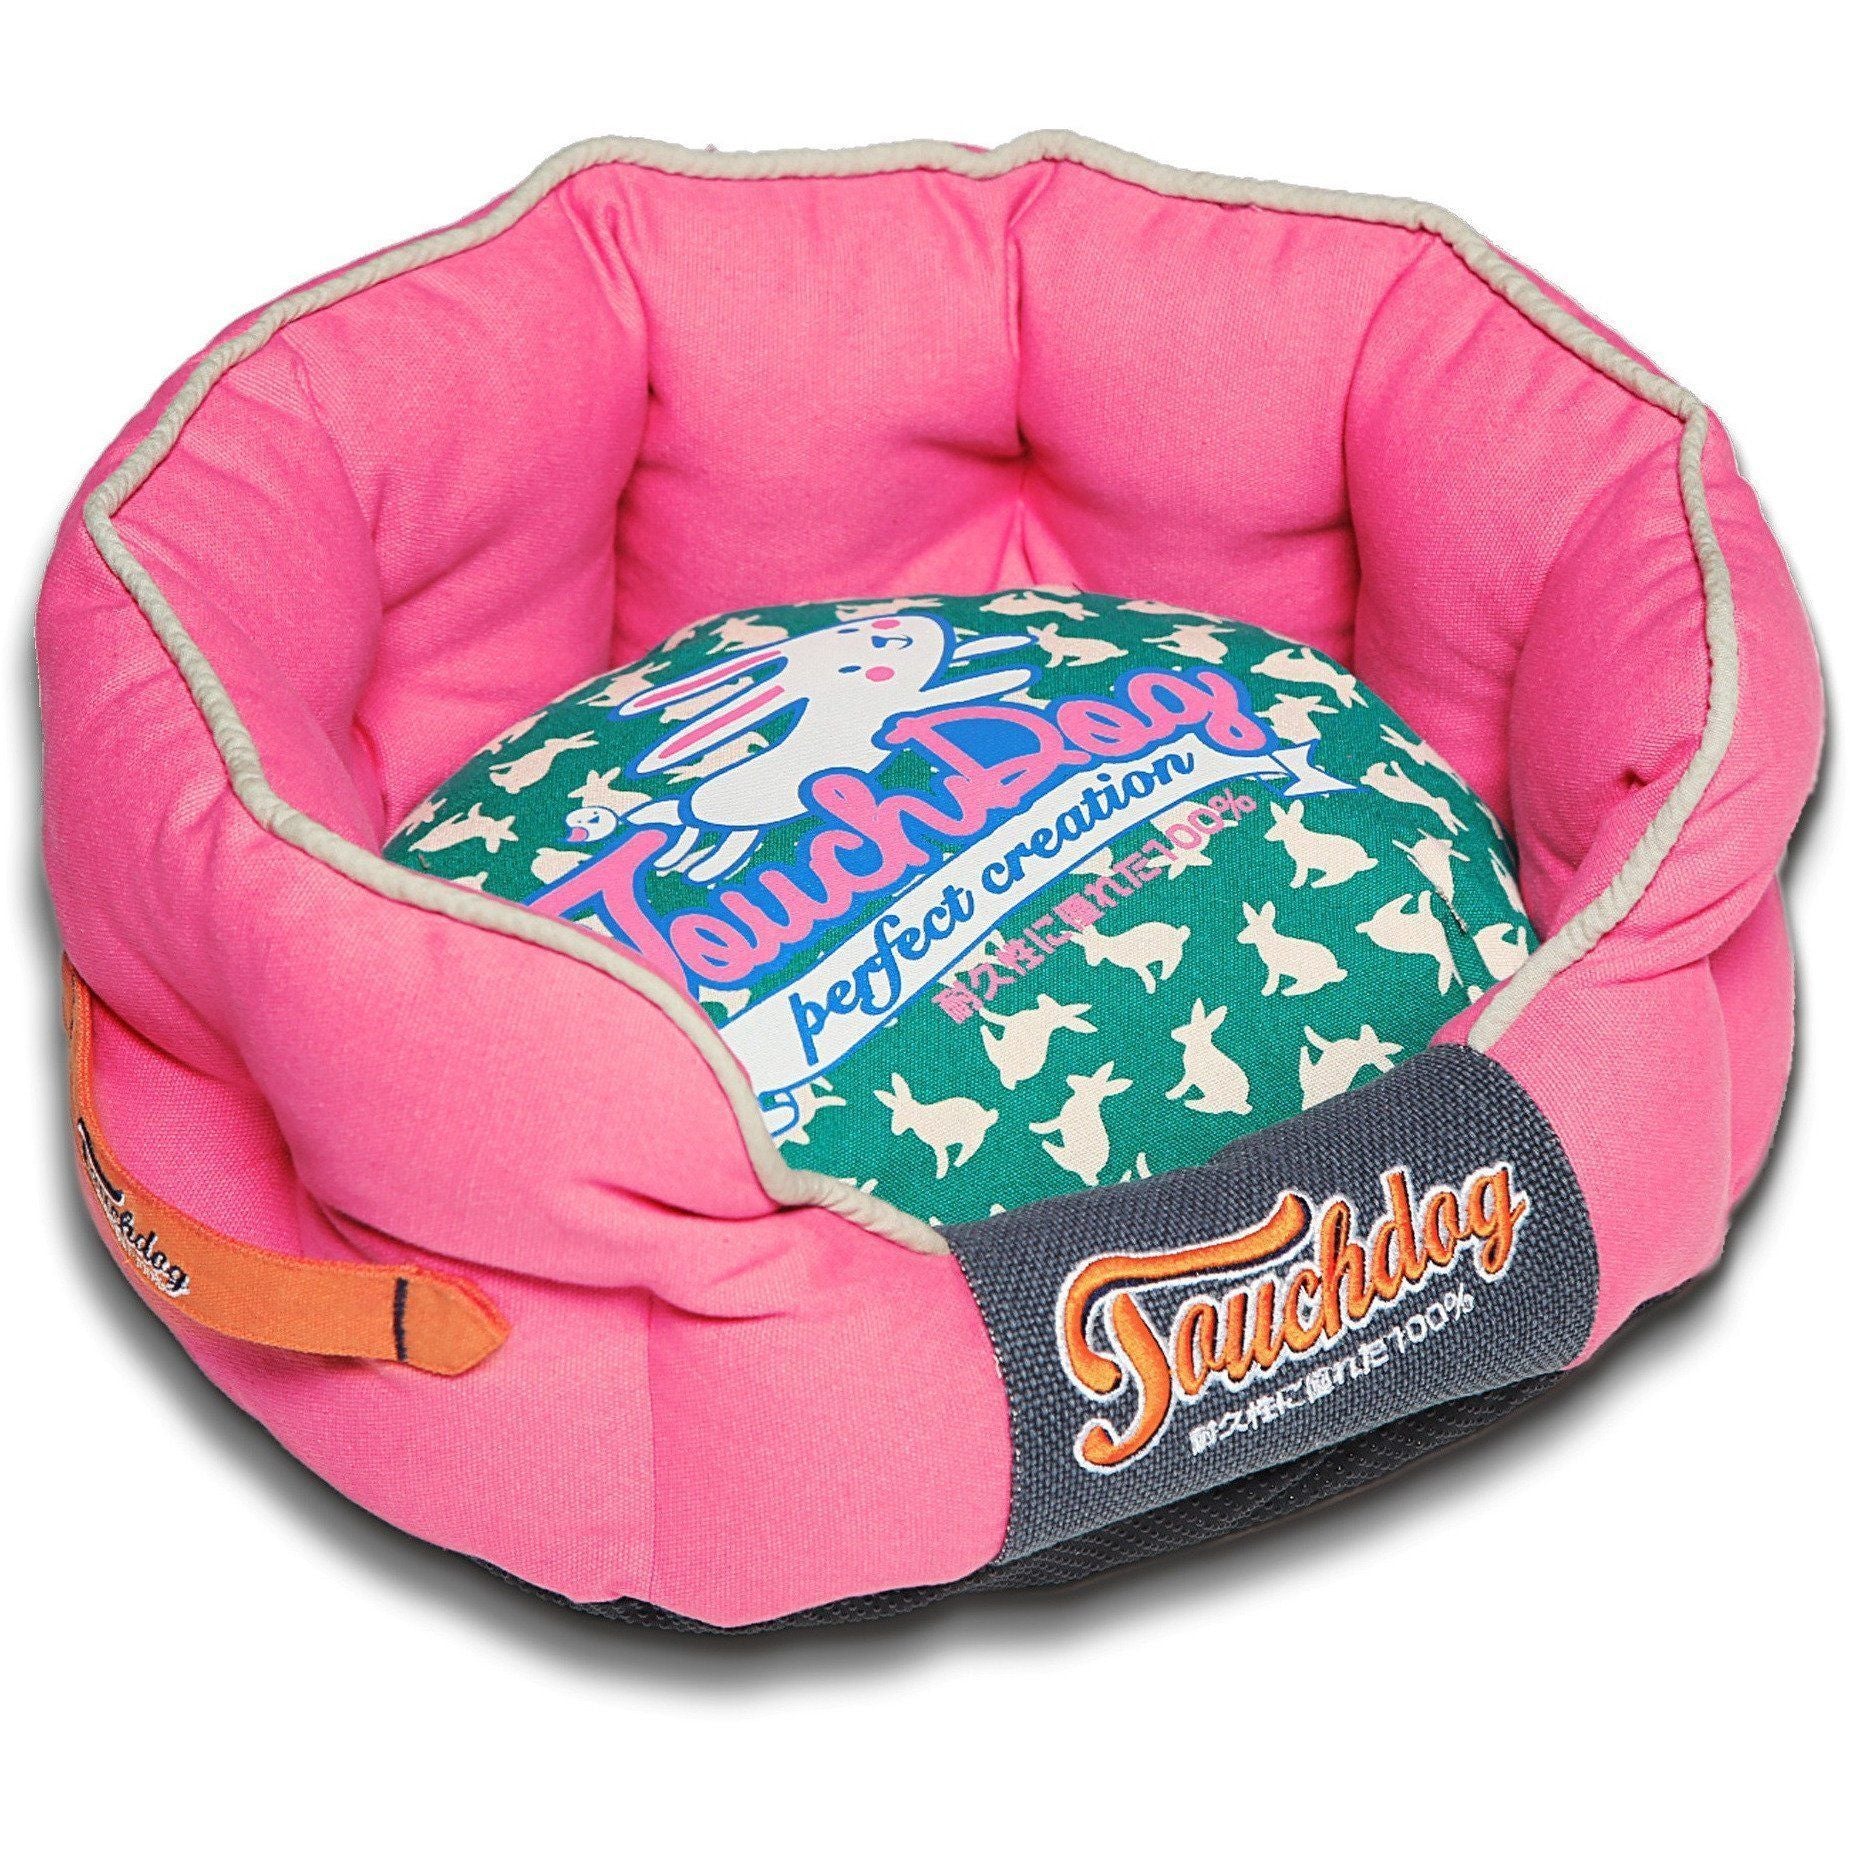 Touchdog ® 'Lazy-Bones' Rabbit-Spotted Rounded Designer Dog Bed Medium Pink, Teal